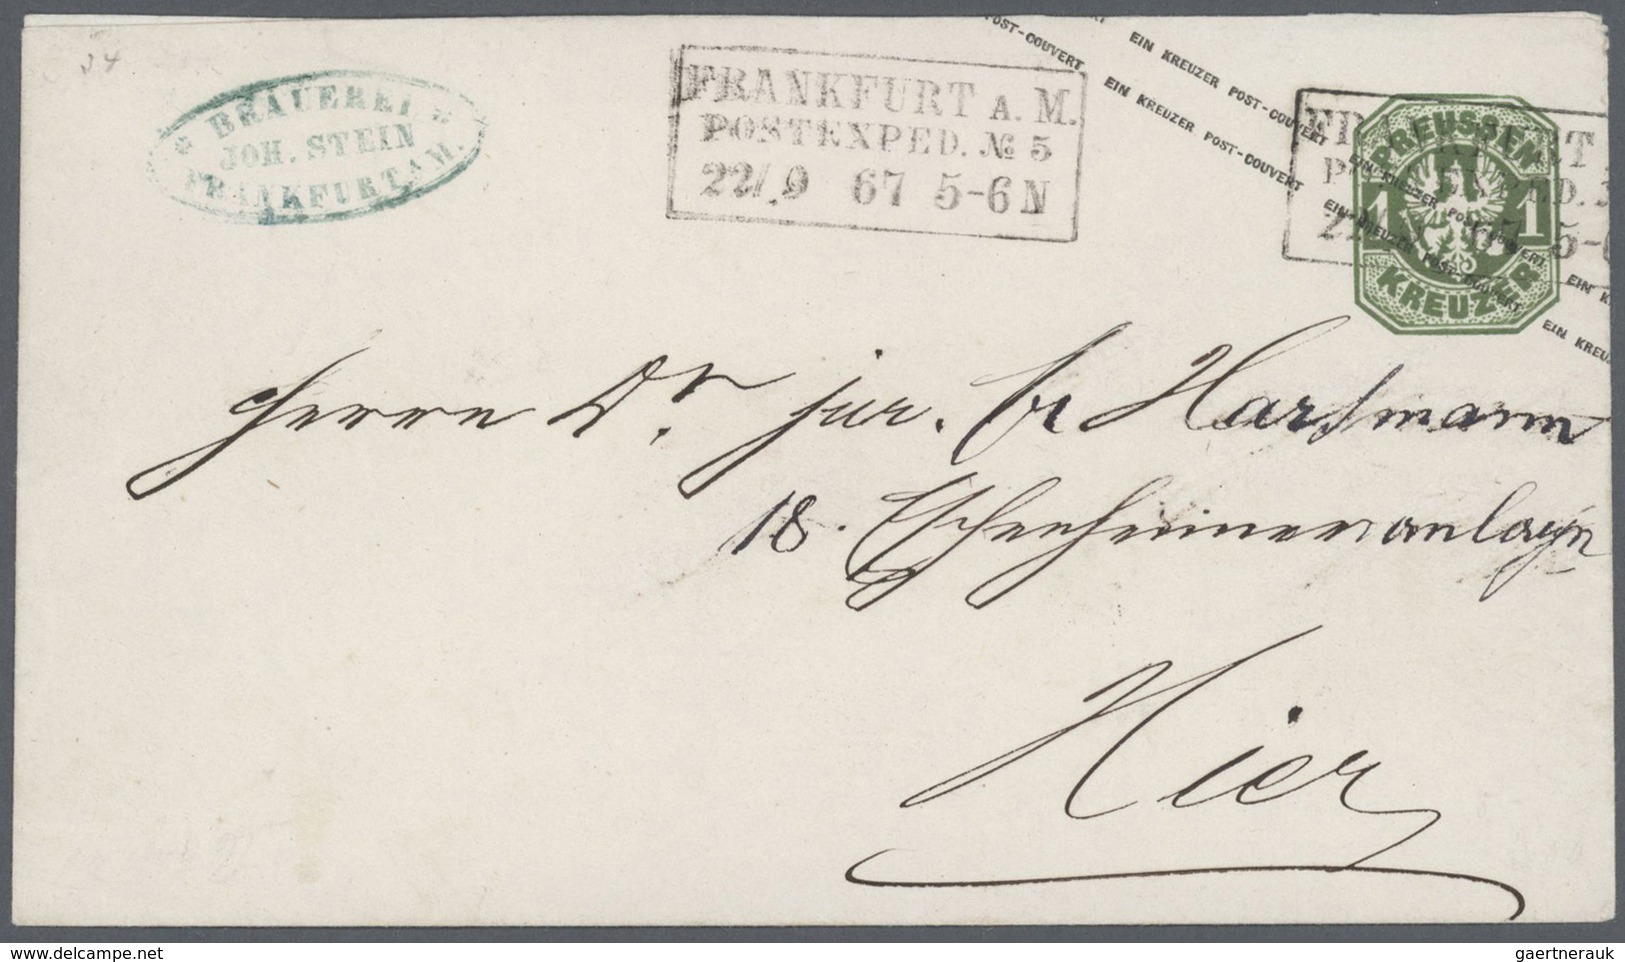 Preußen - Marken und Briefe: 1803/1869, hochwertige Partie von ca. 27 markenlosen Briefen und 1 Ganz